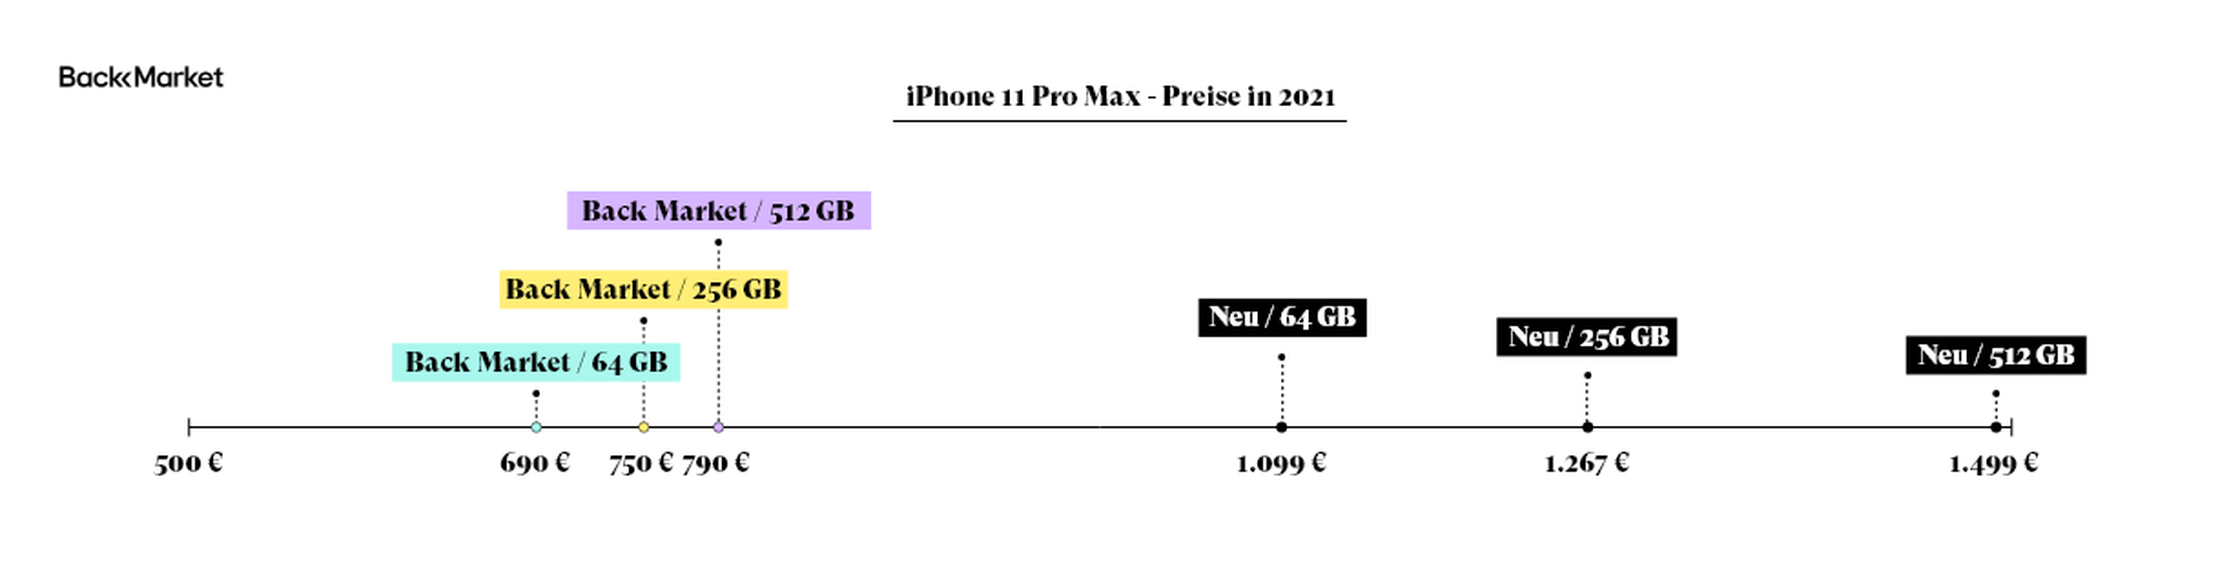 iPhone 11 Pro Max Preise